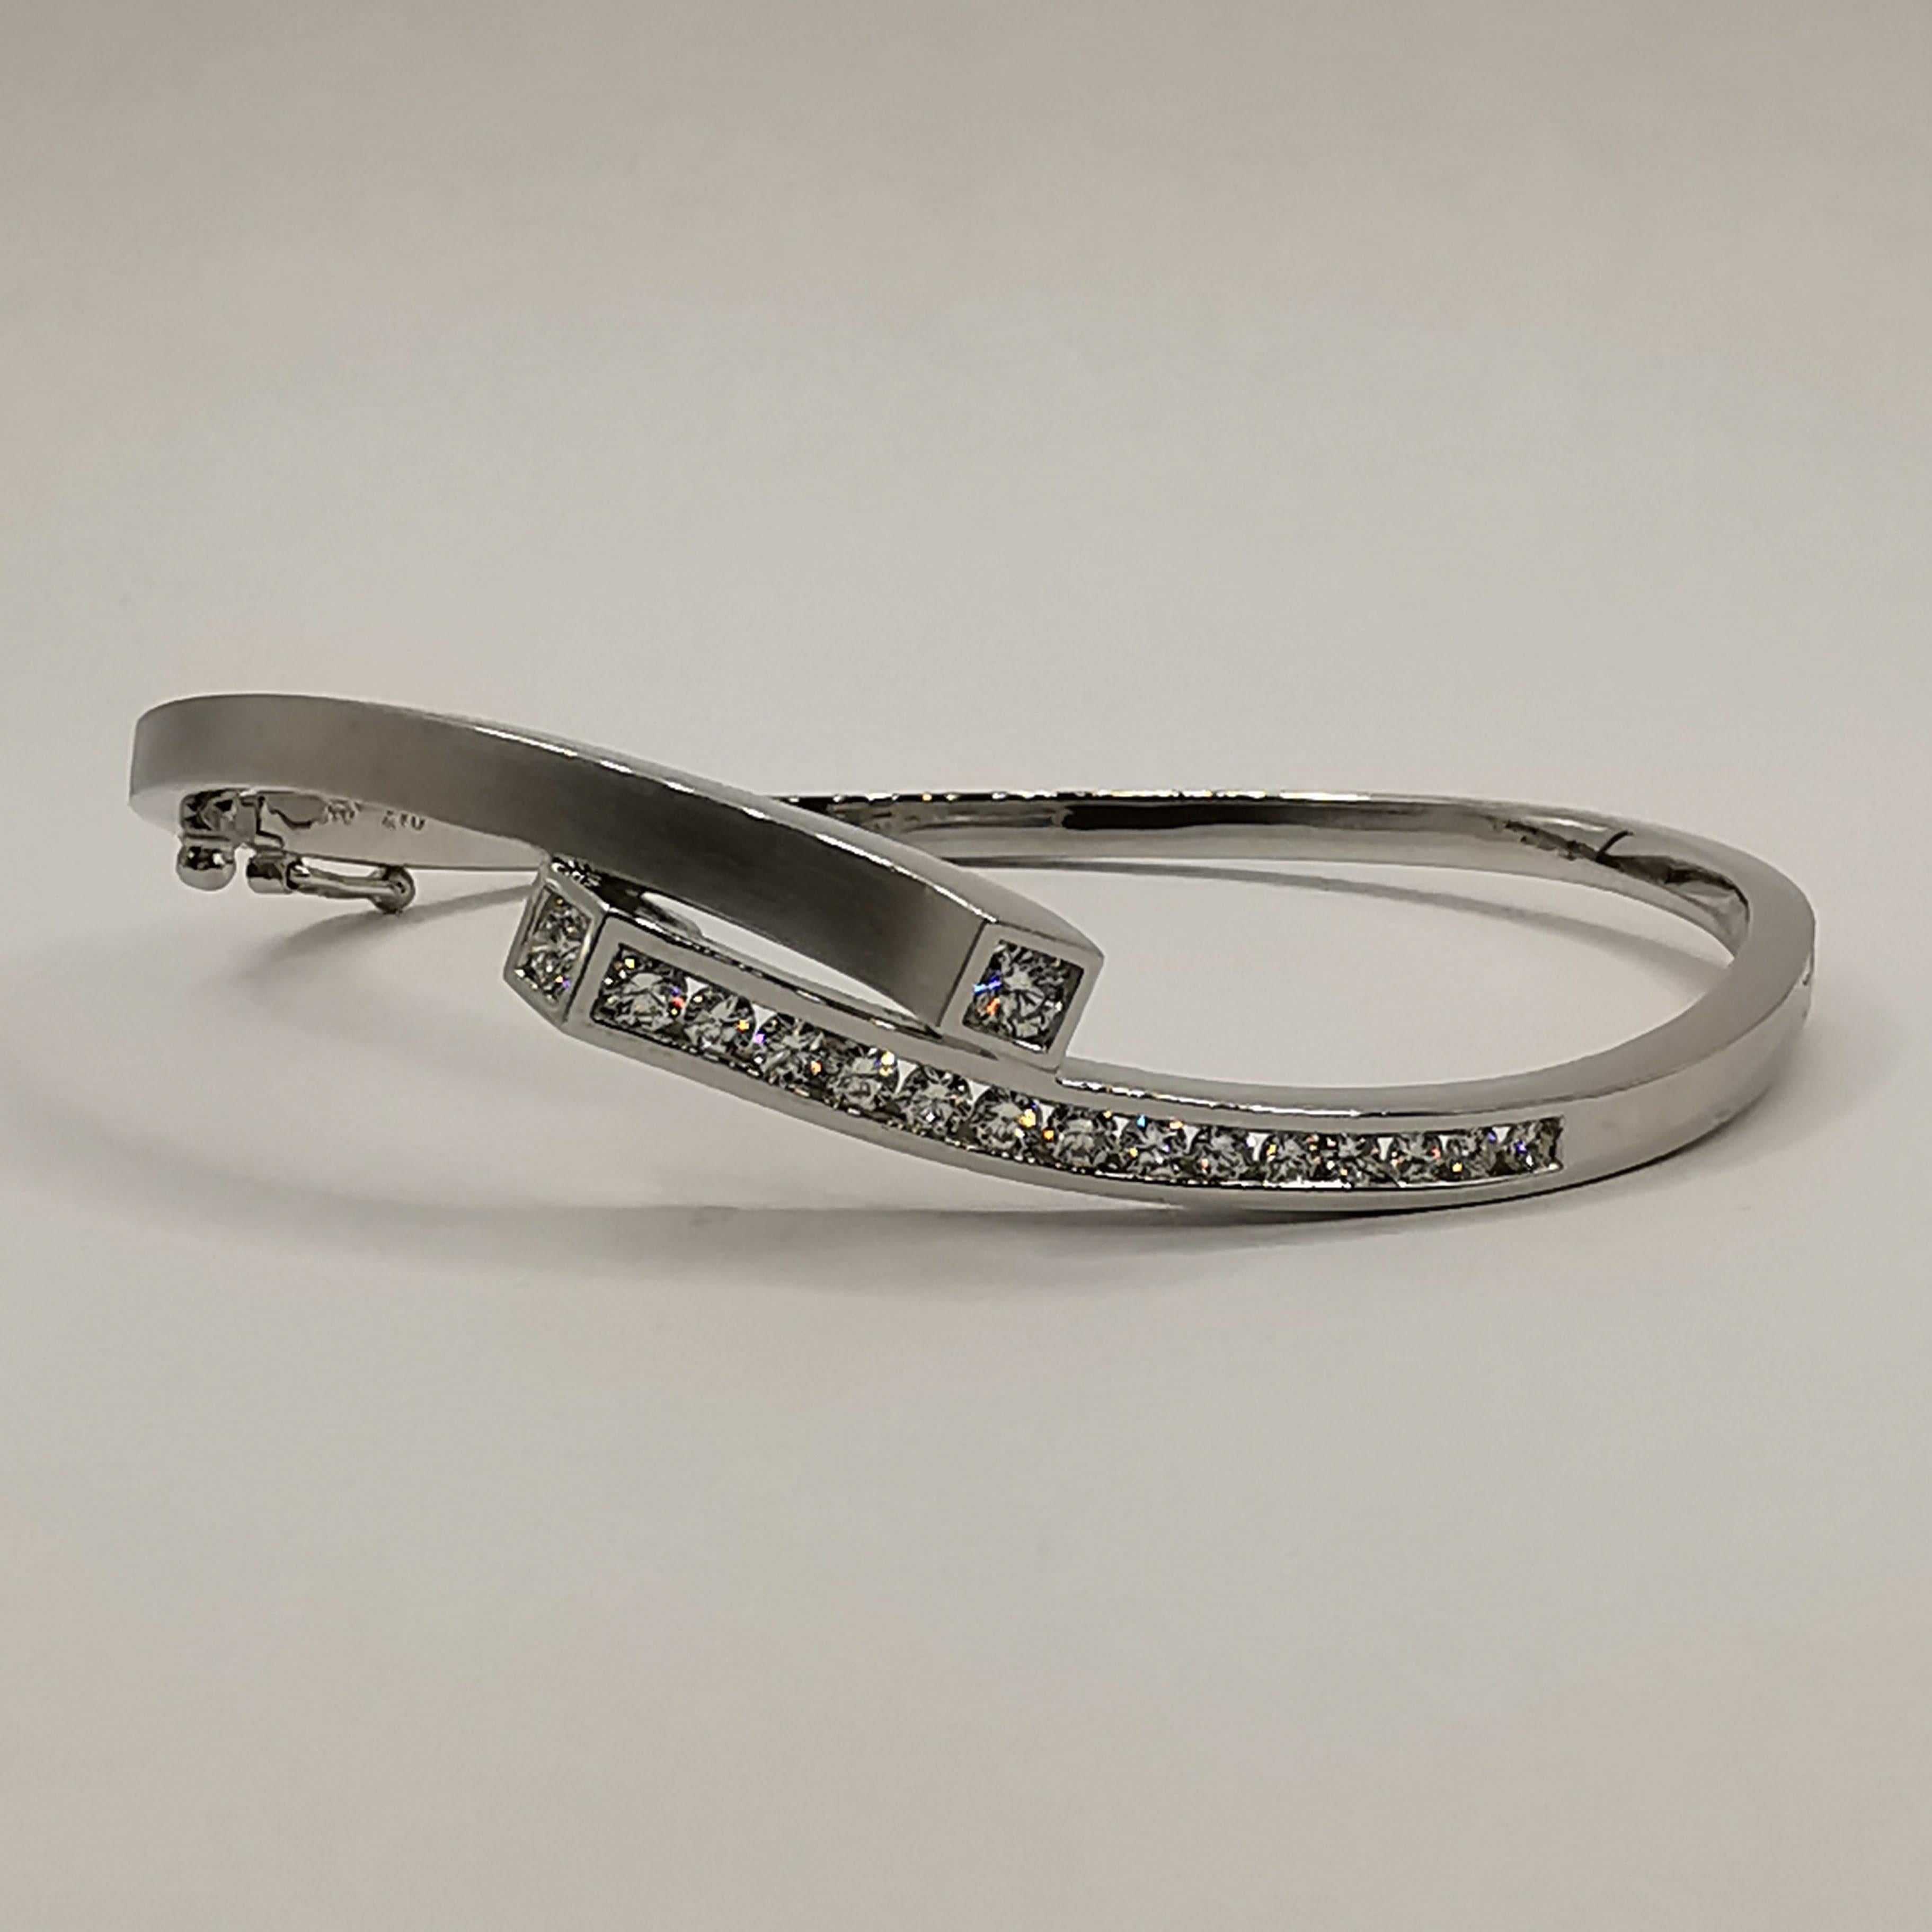 Dieses luxuriöse Diamantarmband ist ein echtes Statement, das jedem Outfit einen Hauch von Glamour und Raffinesse verleiht. Das aus 18-karätigem Weißgold gefertigte Armband besticht durch sein schlichtes und elegantes Design, das garantiert alle